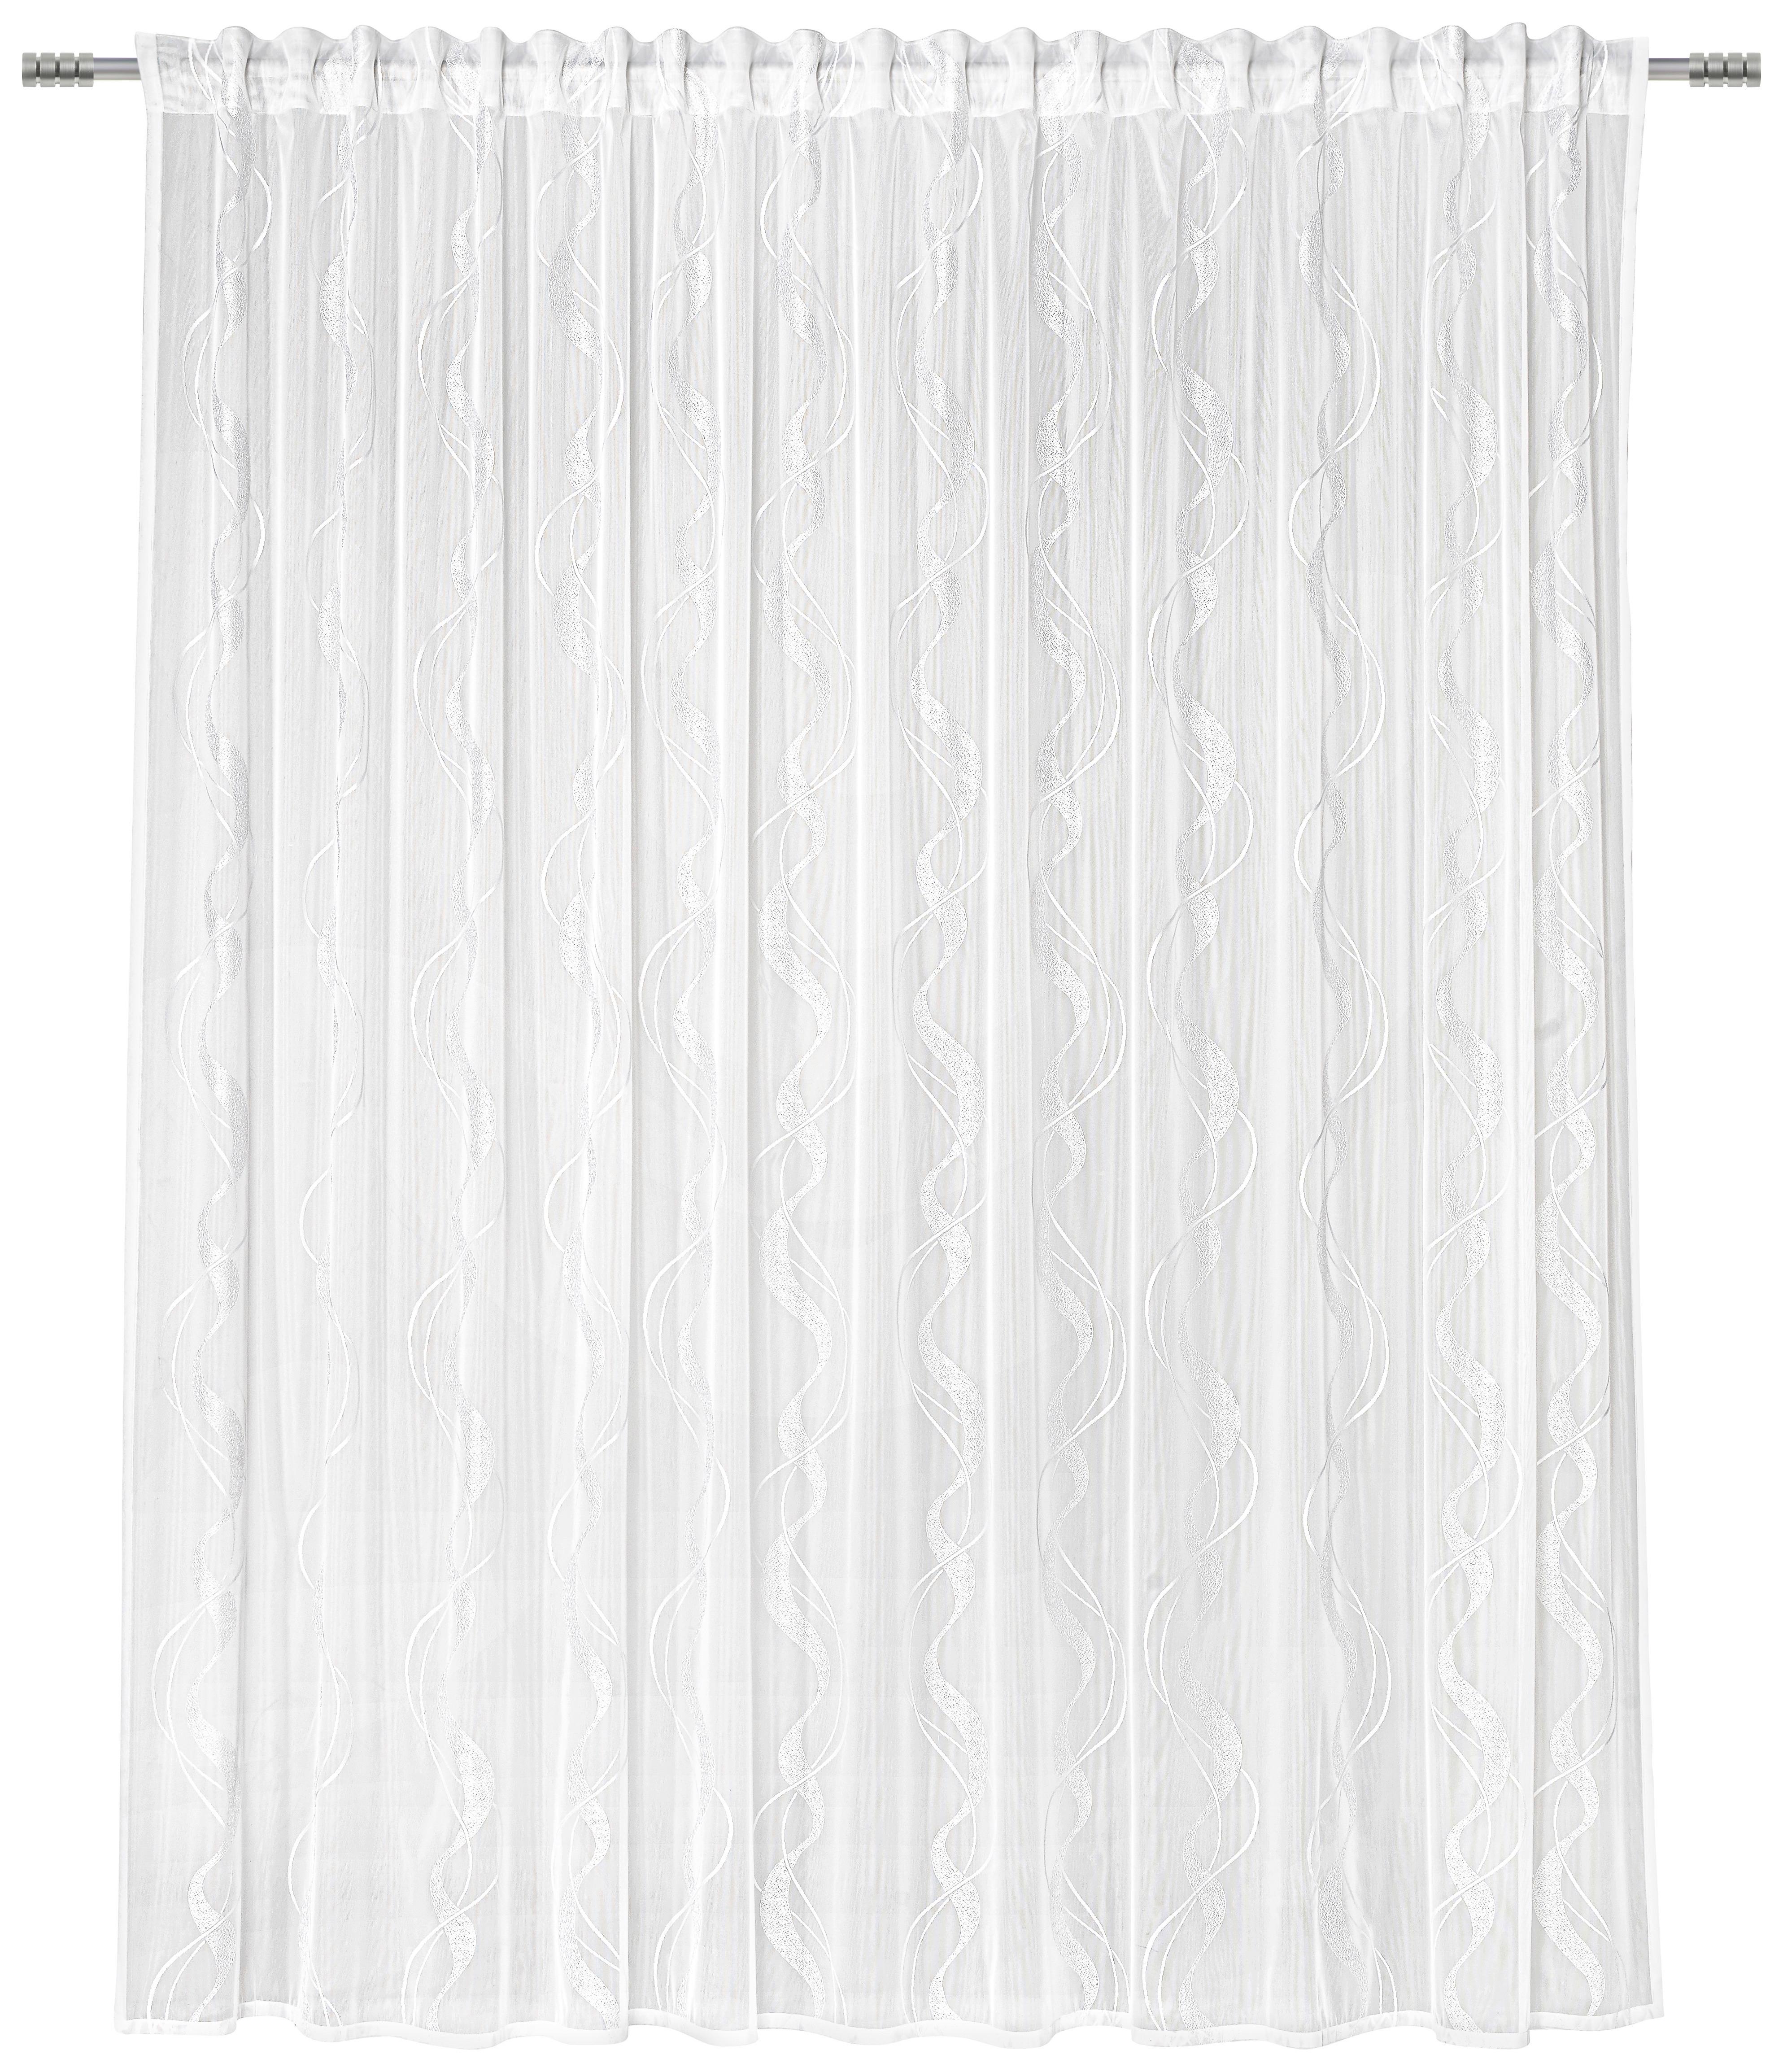 Kusová Záclona Wave Store 3, 300/245cm - bílá, textil (300/245cm) - Modern Living